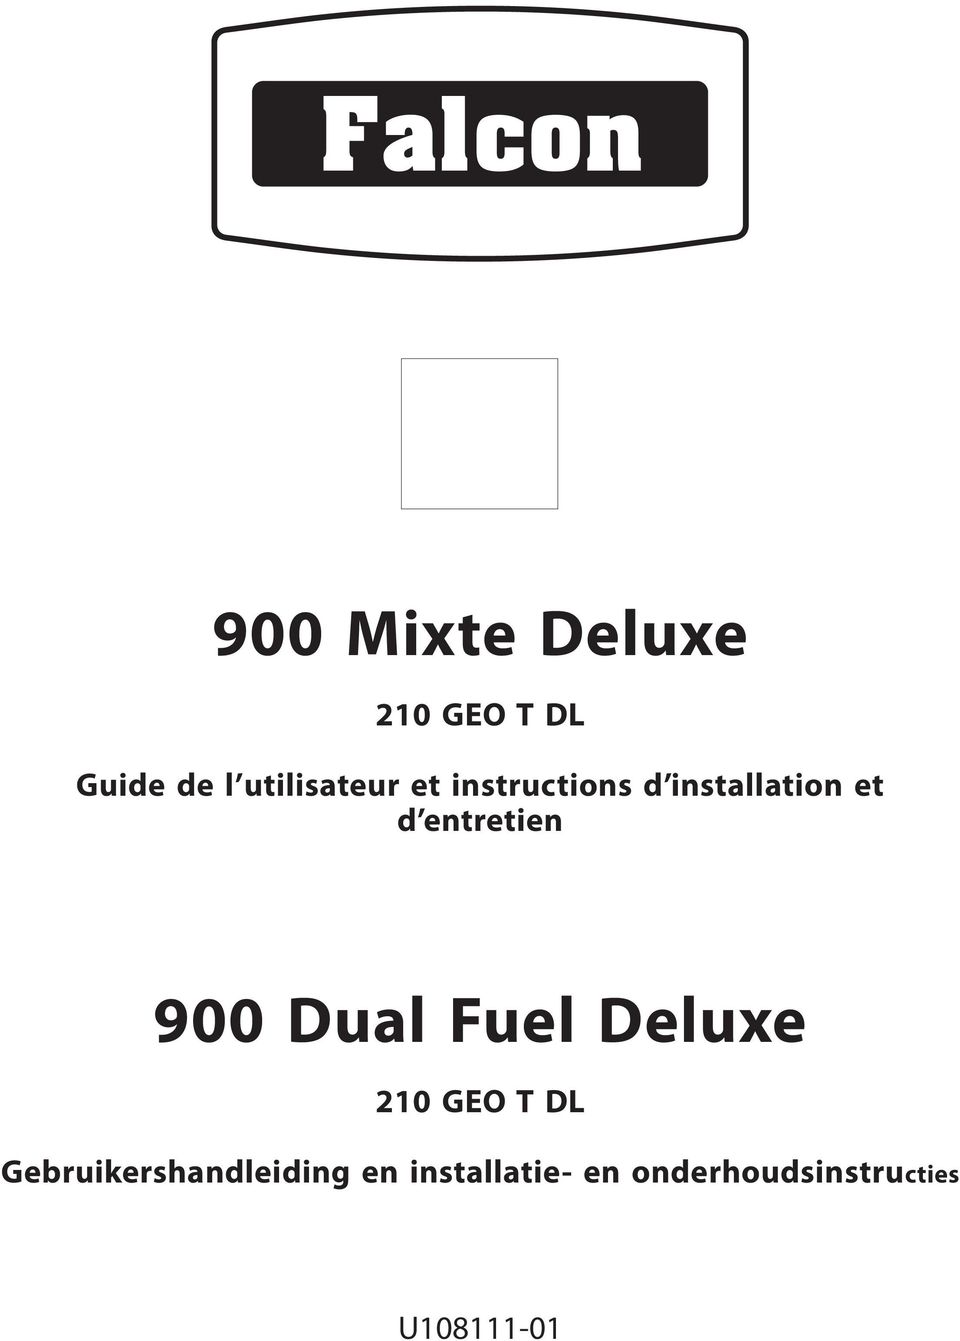 entretien 900 Dual Fuel Deluxe 210 GEO T DL